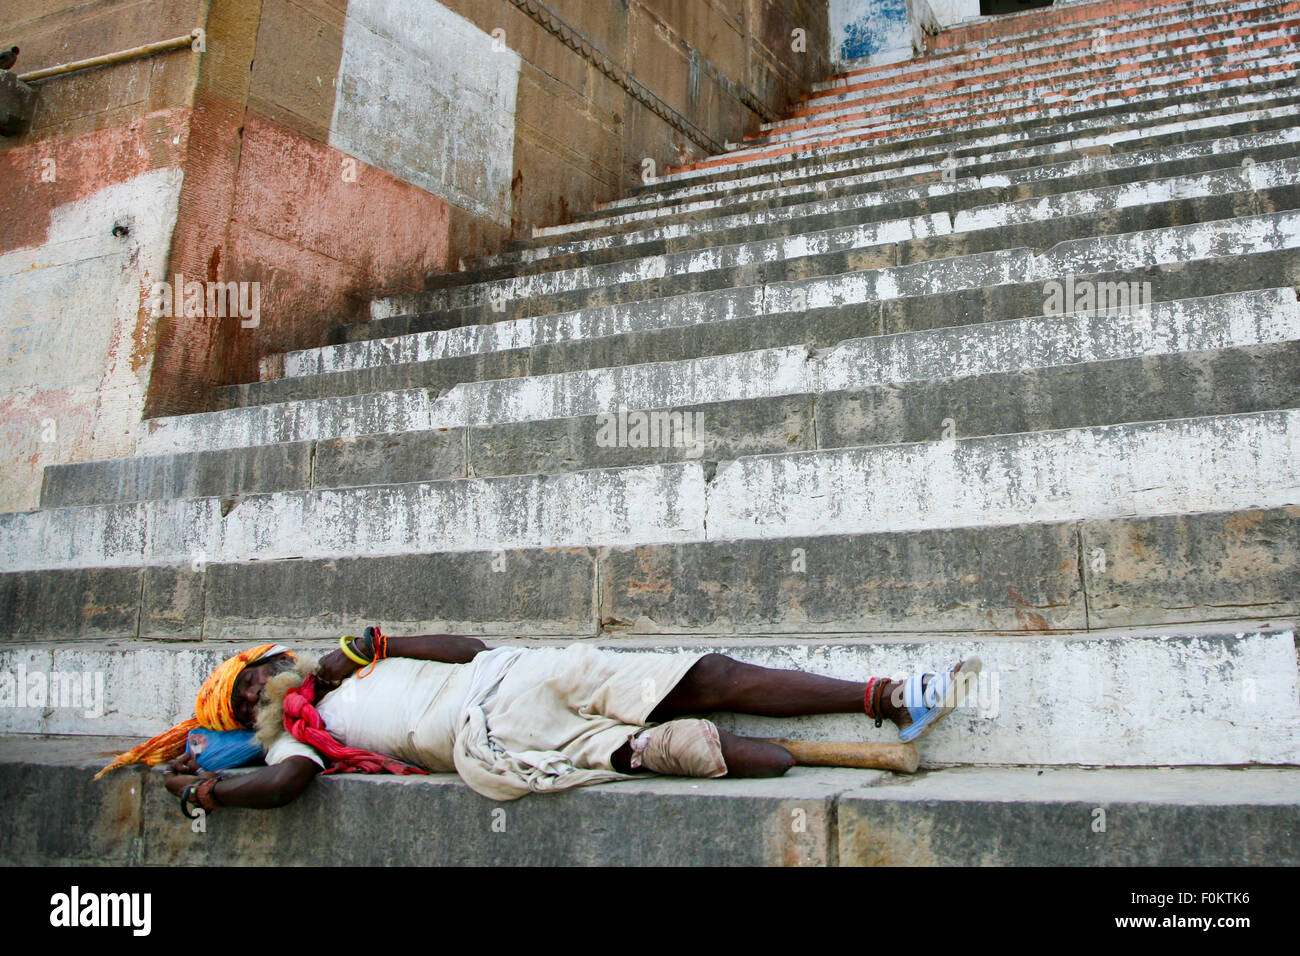 Pattes non identifiés sadhu dormir sur les marches d'un ghat, Inde 20123. La pauvreté augmente en Inde Banque D'Images